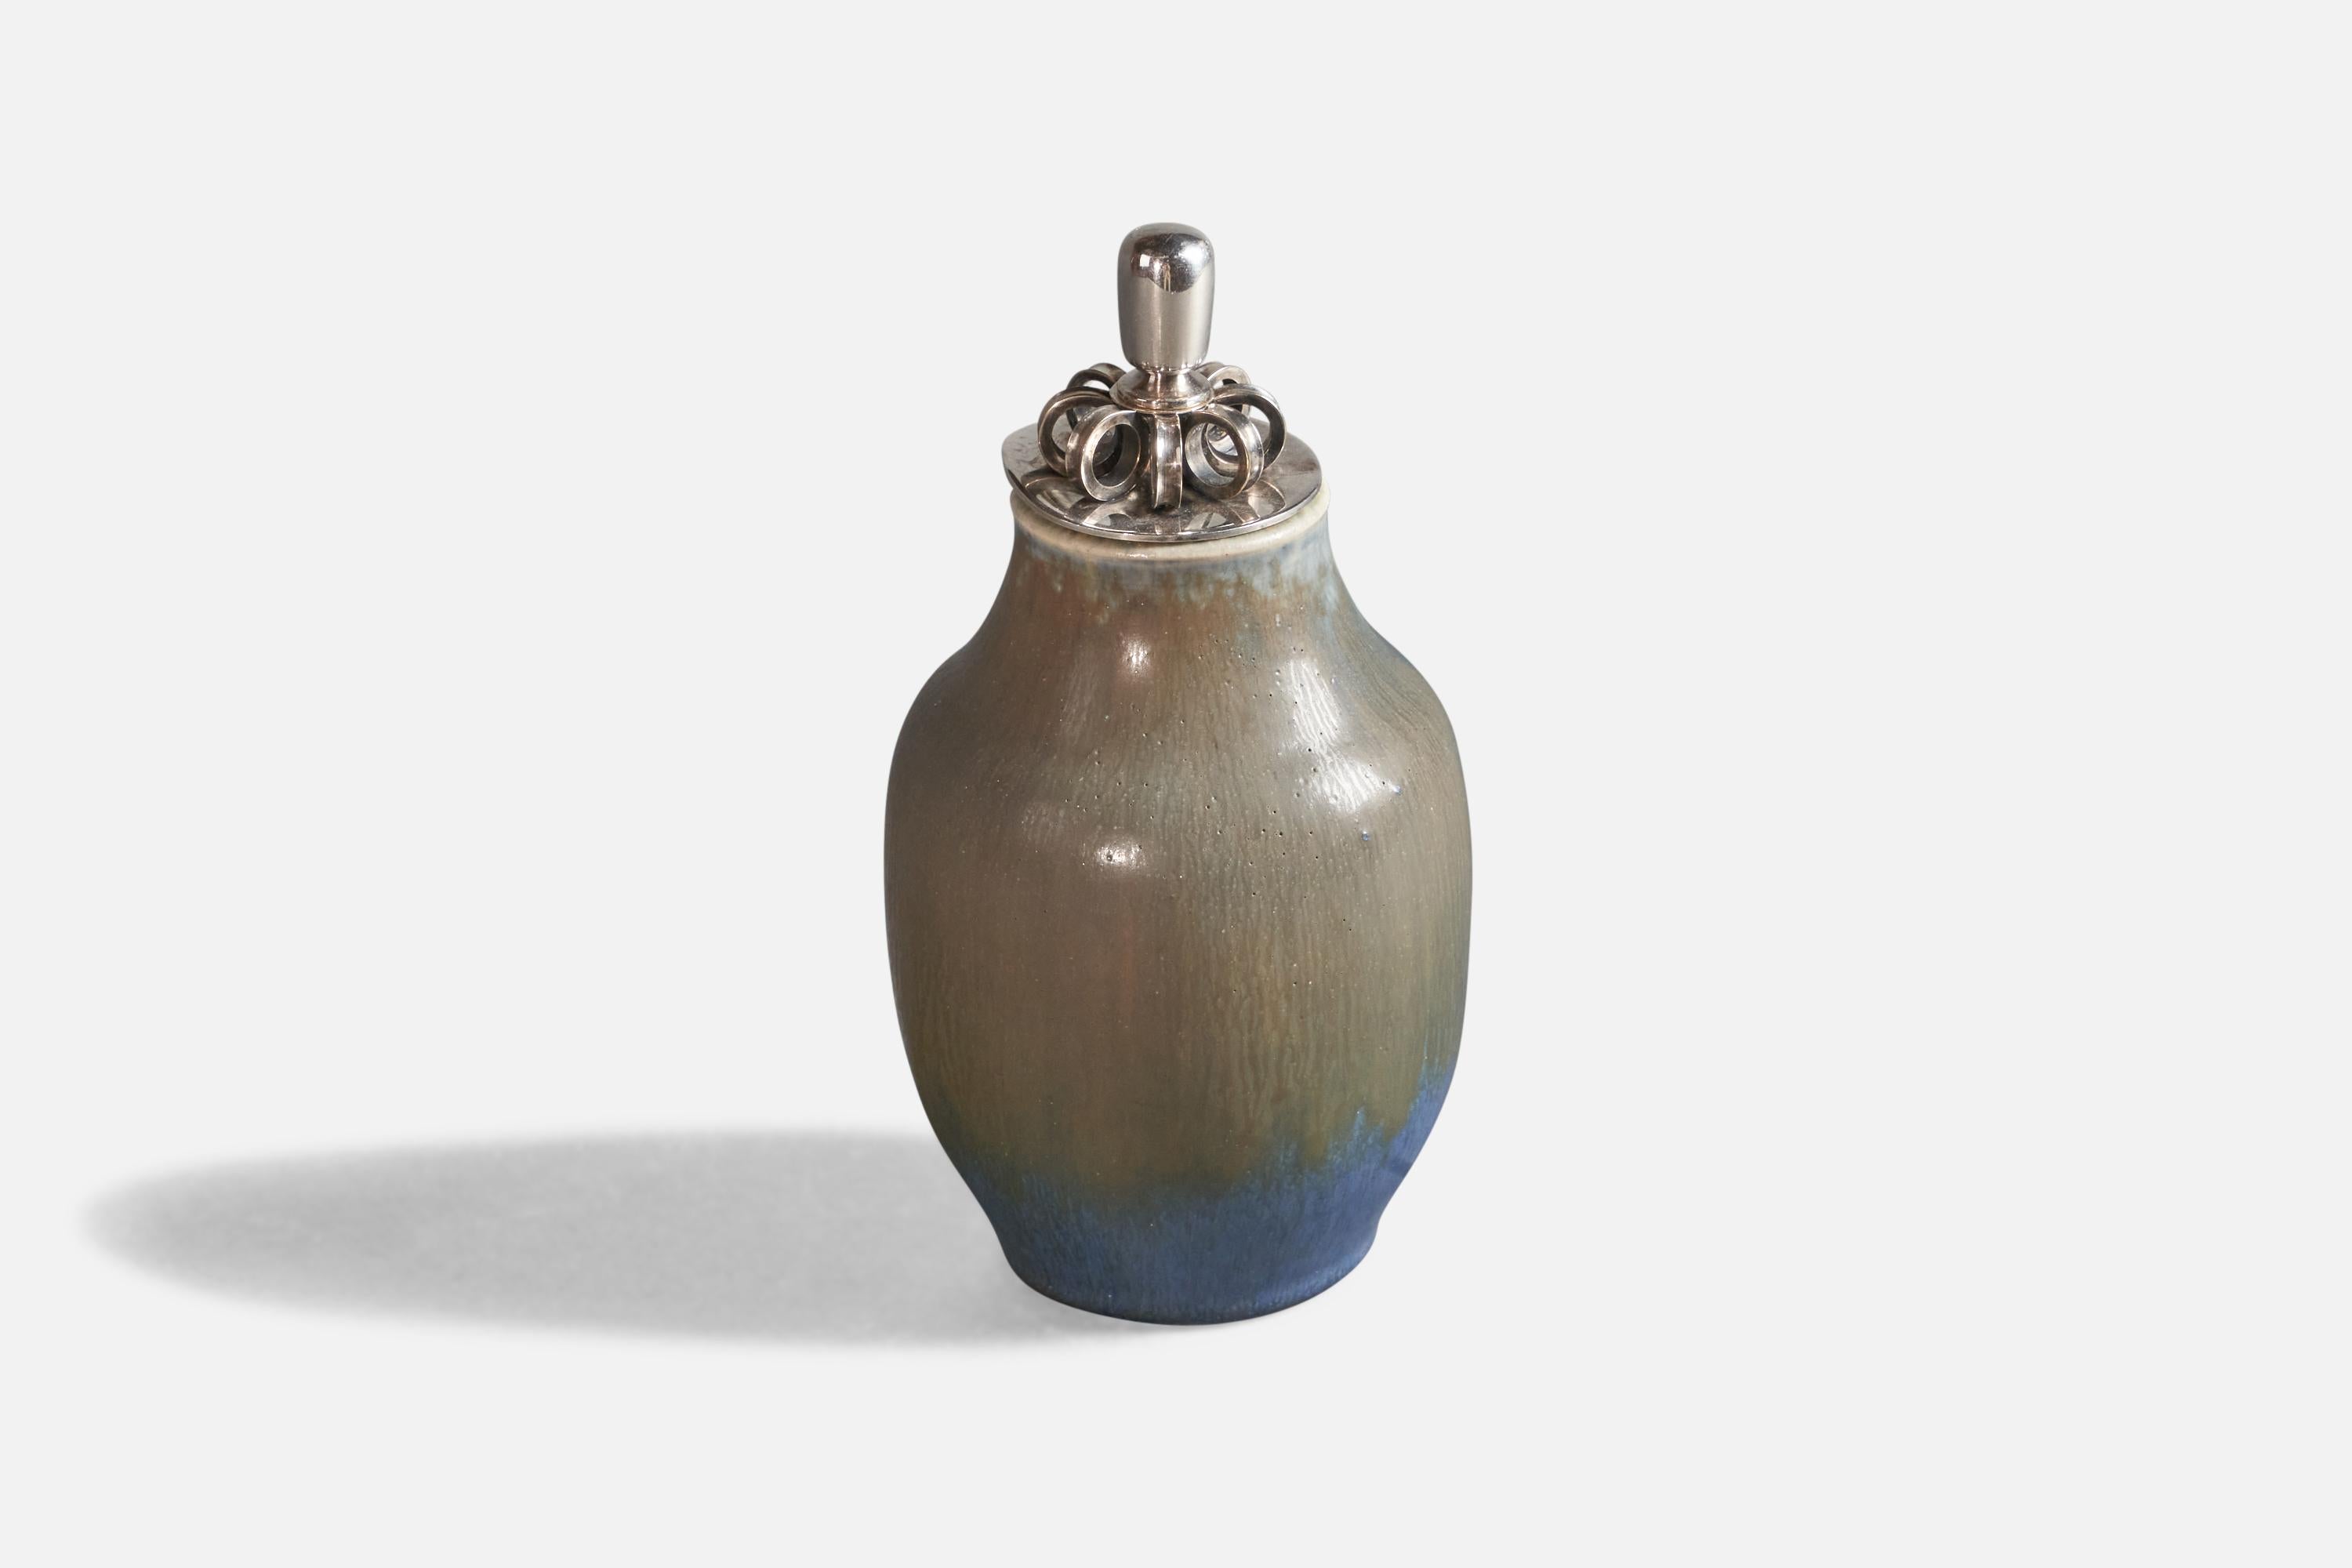 Vase aus blau und grau glasiertem Steinzeug mit versilbertem Deckel, Entwurf und Produktion von Michael Andersen, Bornholm, Dänemark, um 1960.